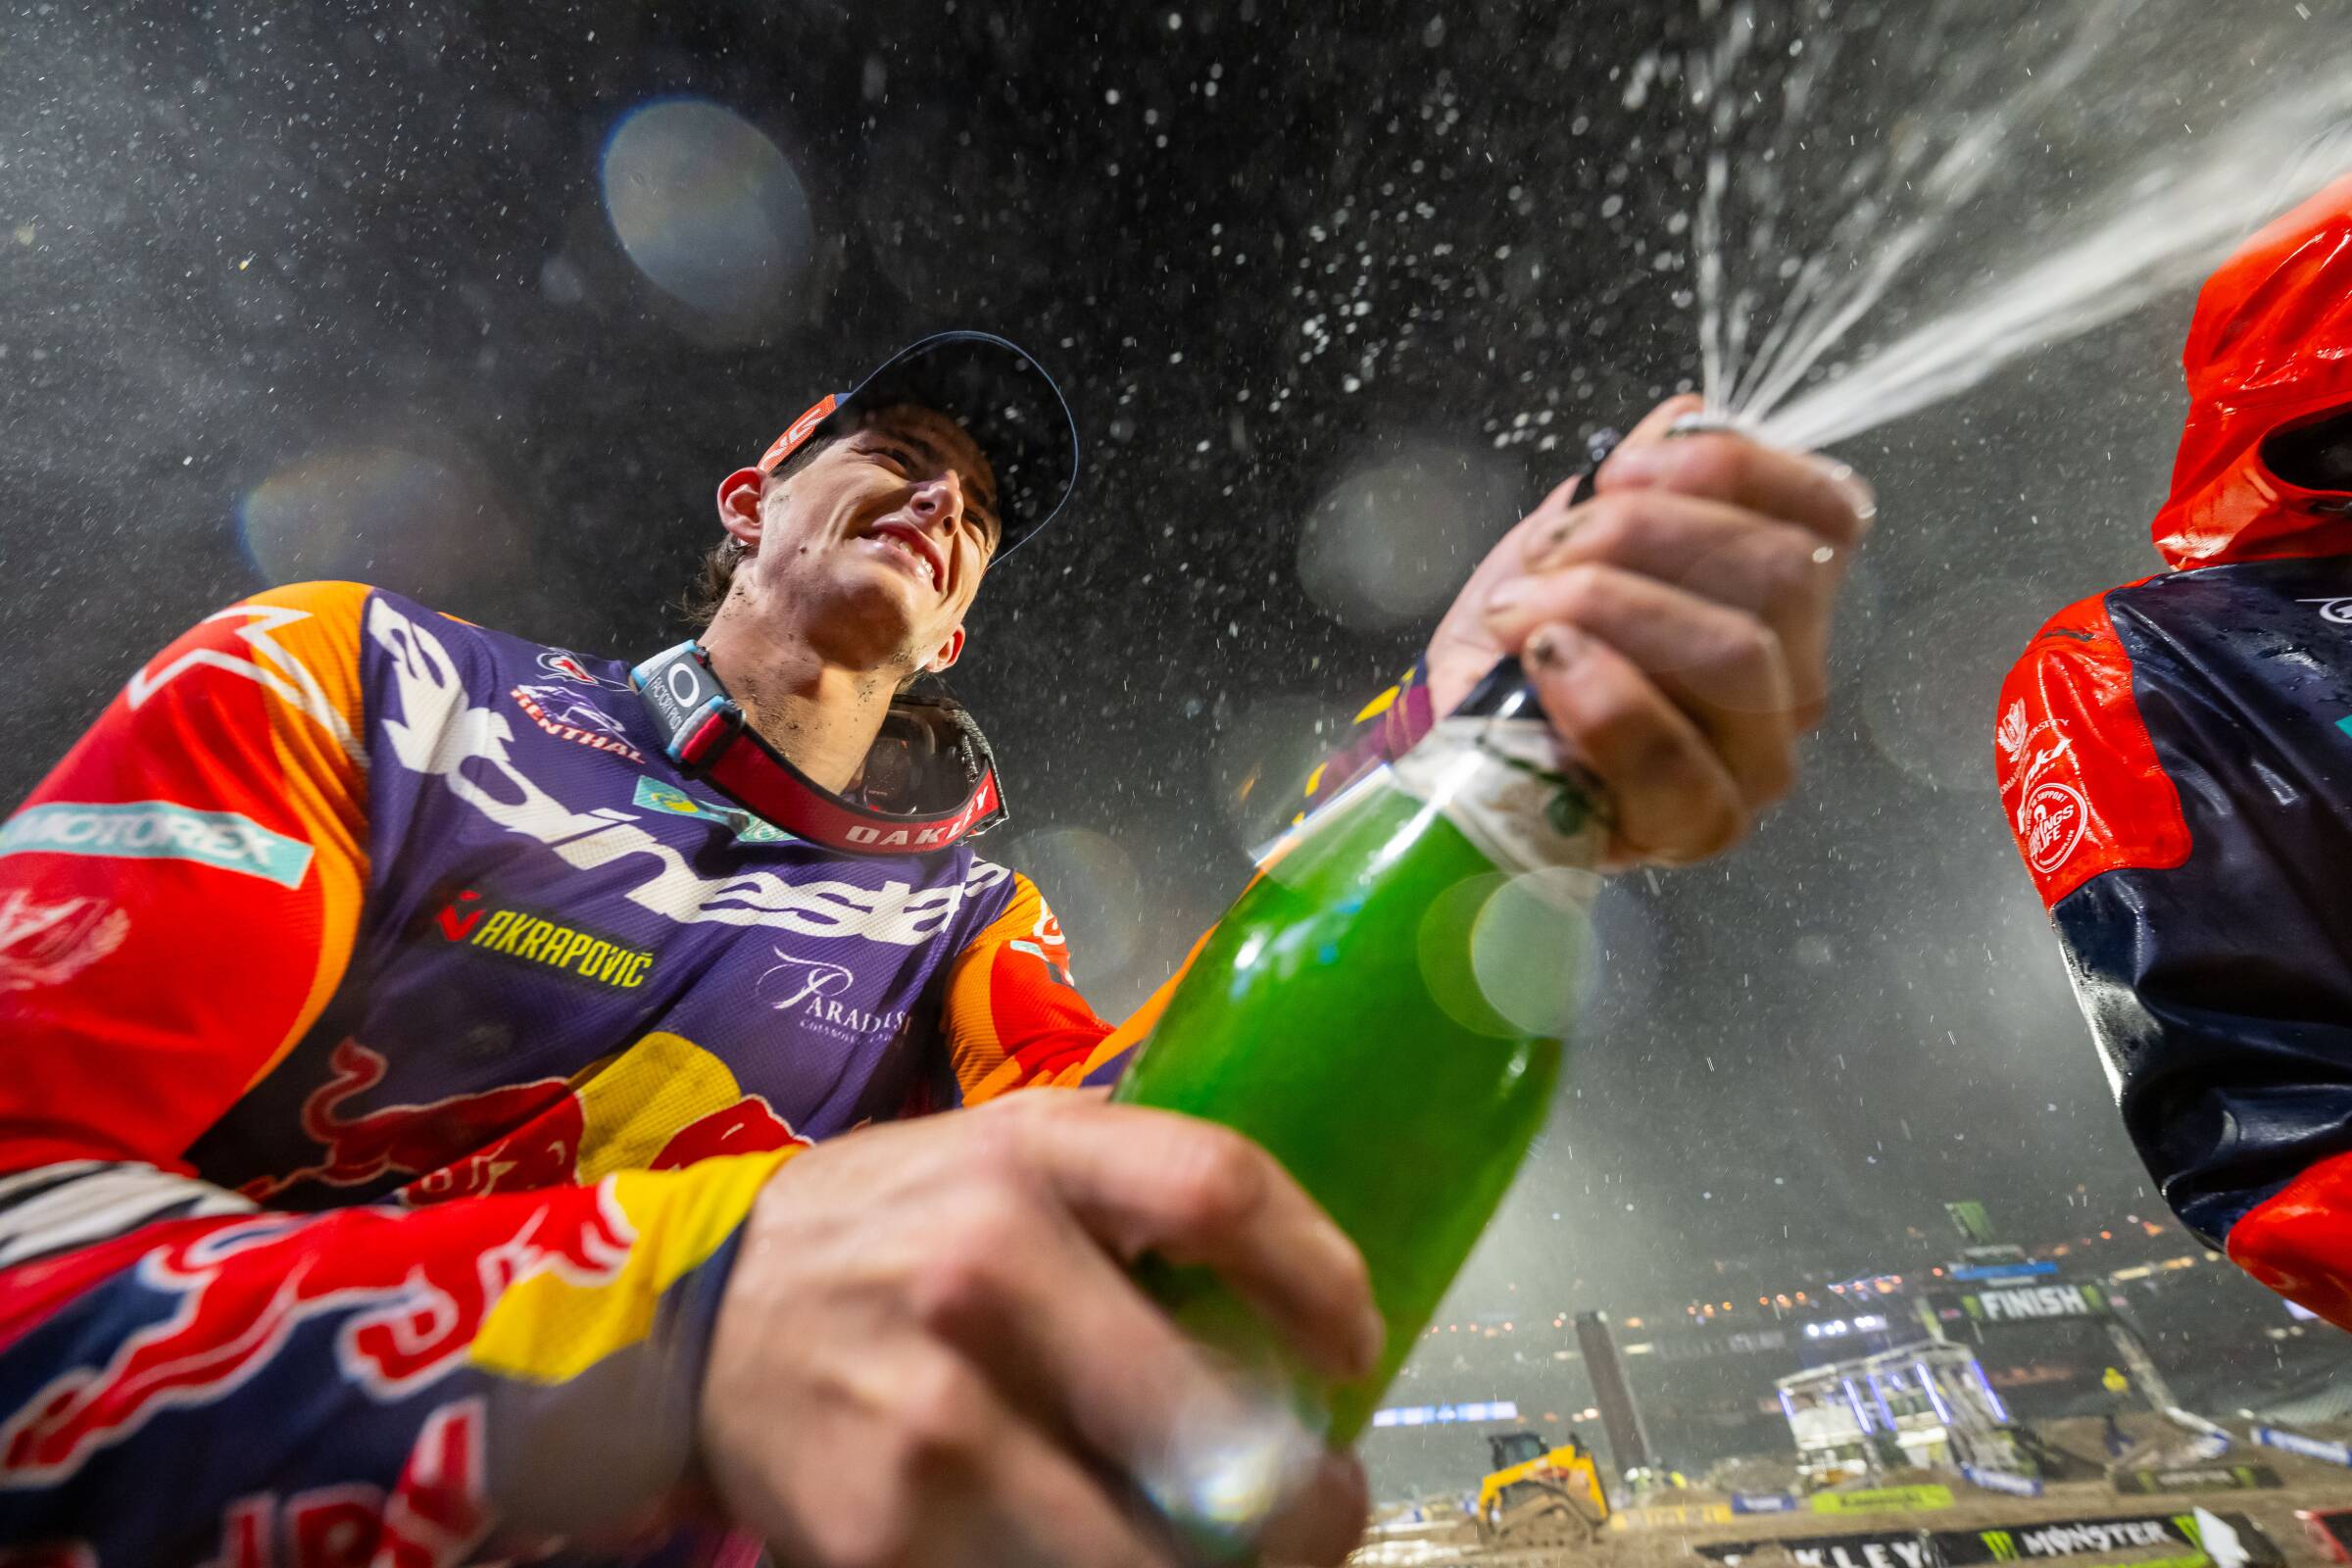 AMA SUPERCROSS: CHASE SEXTON coglie la prima vittoria con Red Bull KTM FACTORY RACING